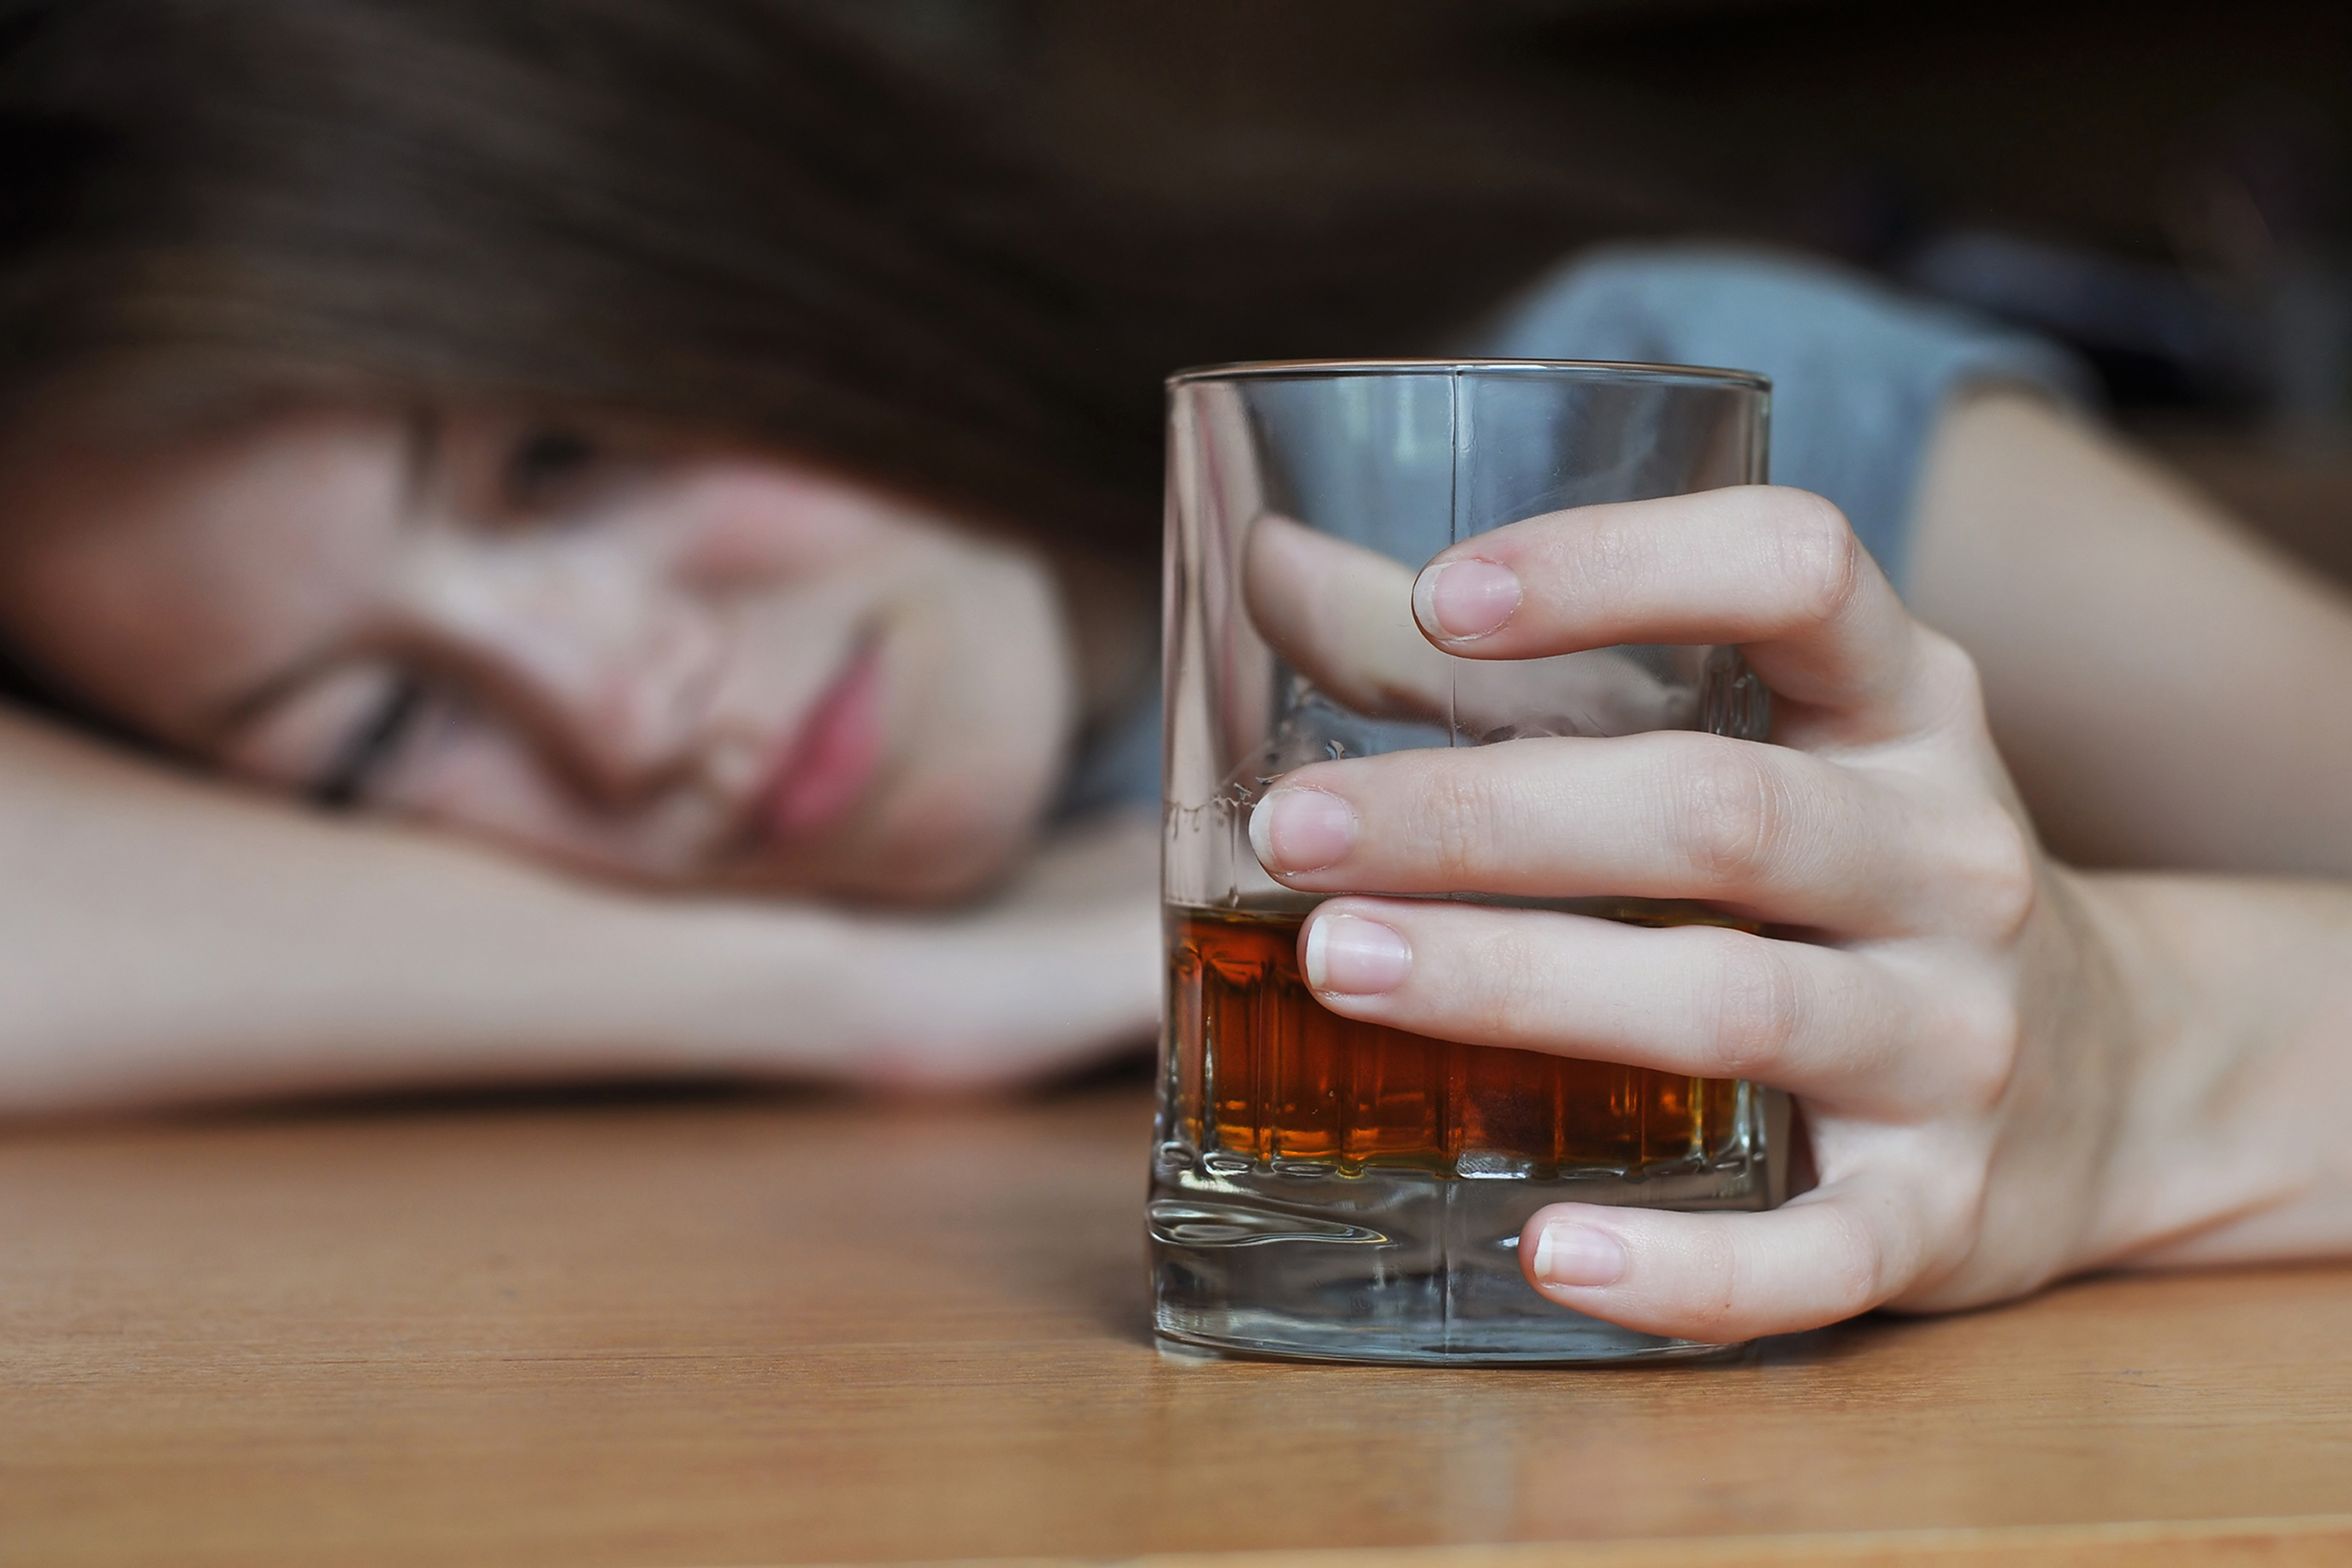 Existe uma quantidade aceitável de álcool? | Juliano Pimentel